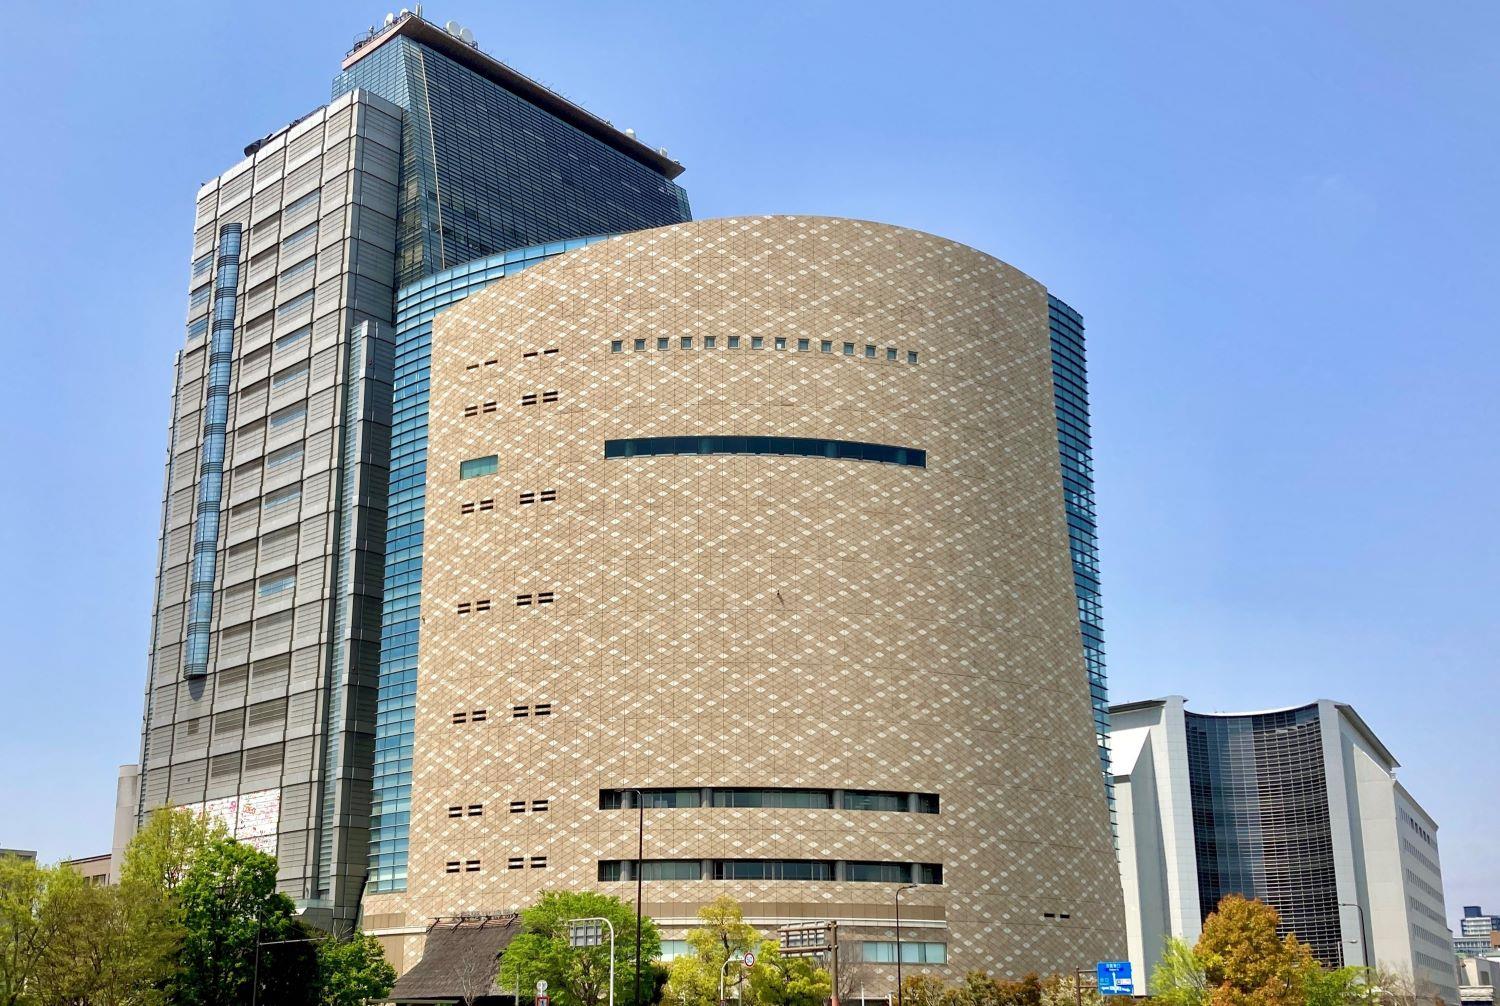 大阪歴史博物館